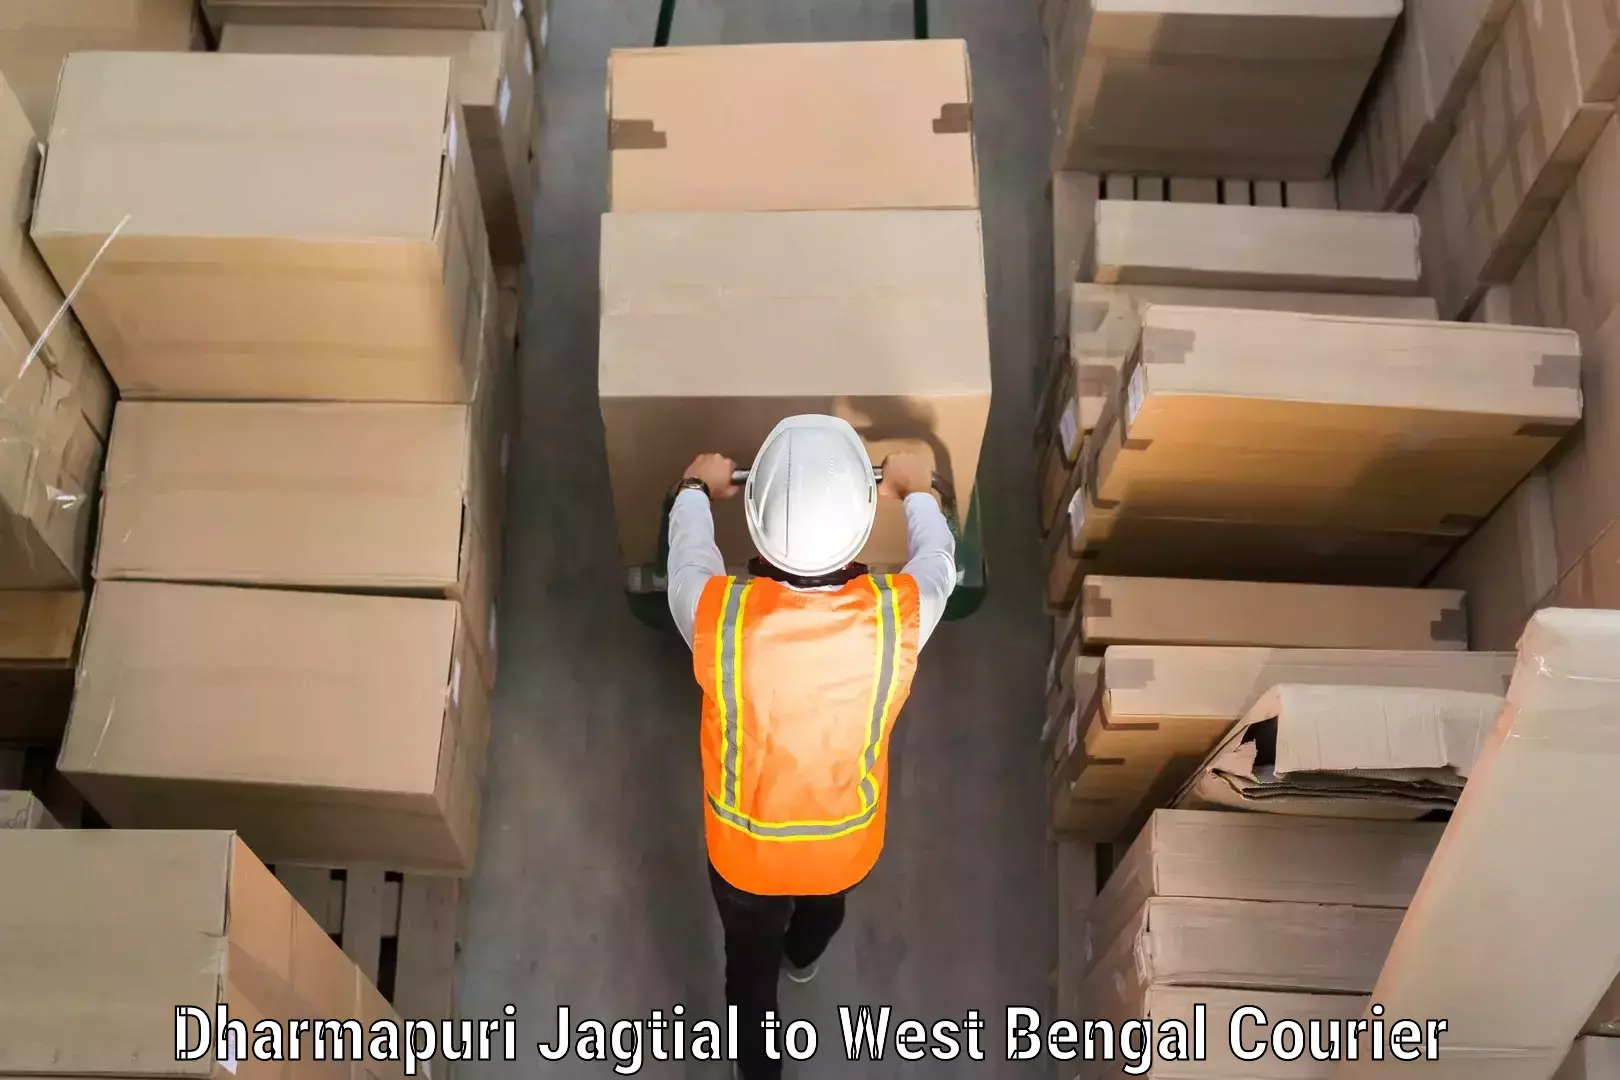 Baggage courier optimization Dharmapuri Jagtial to North 24 Parganas